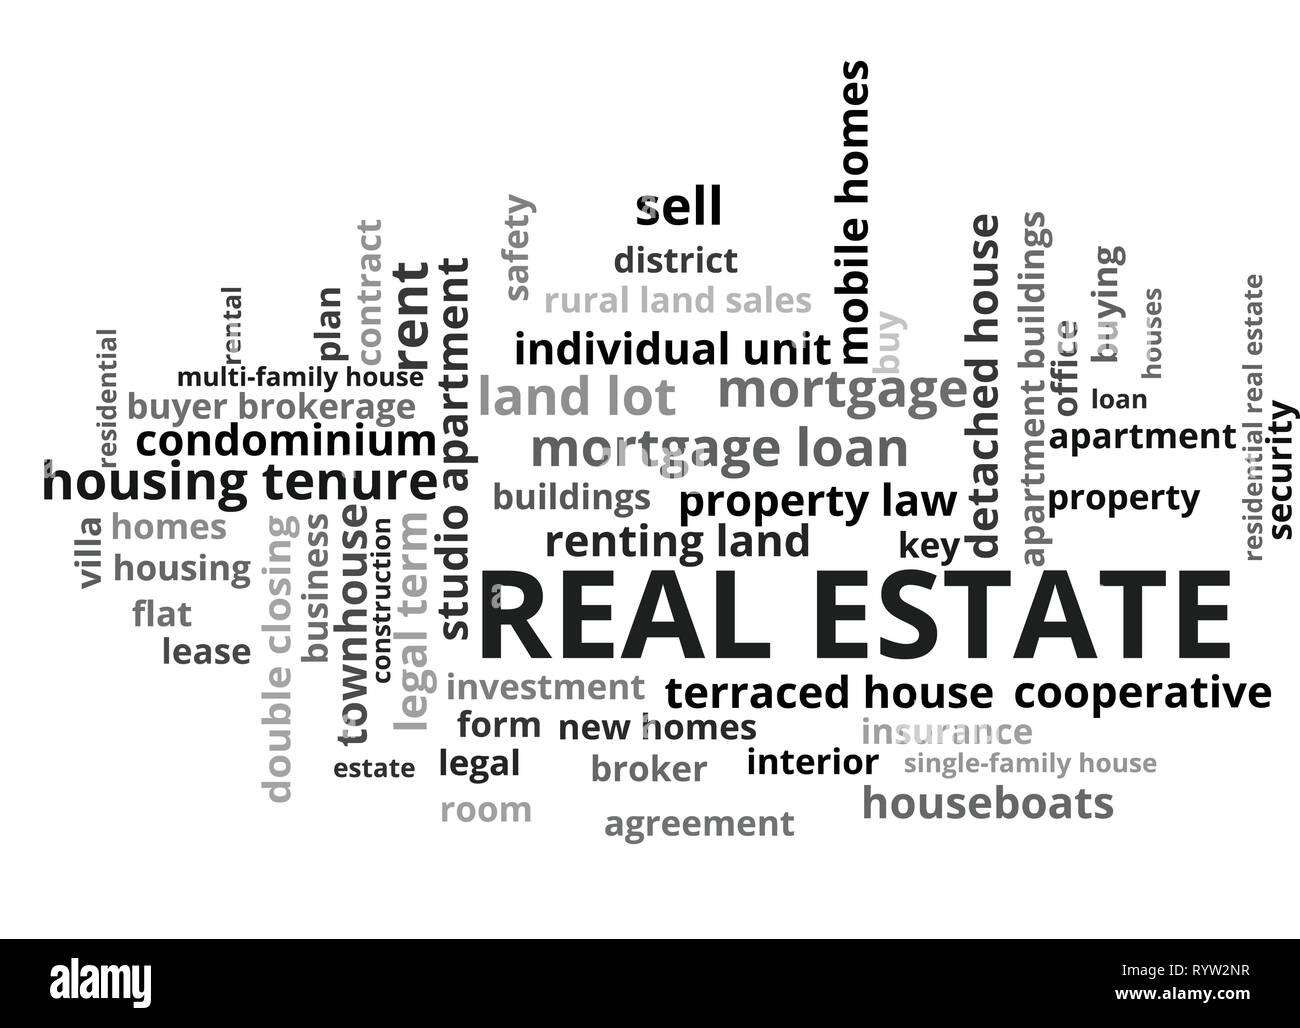 Immobilien Wort Tag Cloud, zeigt Wörter zu kaufen, zu verkaufen oder zu vermieten Häuser und ähnliches Konzept, Vector 10 ESP Stock Vektor